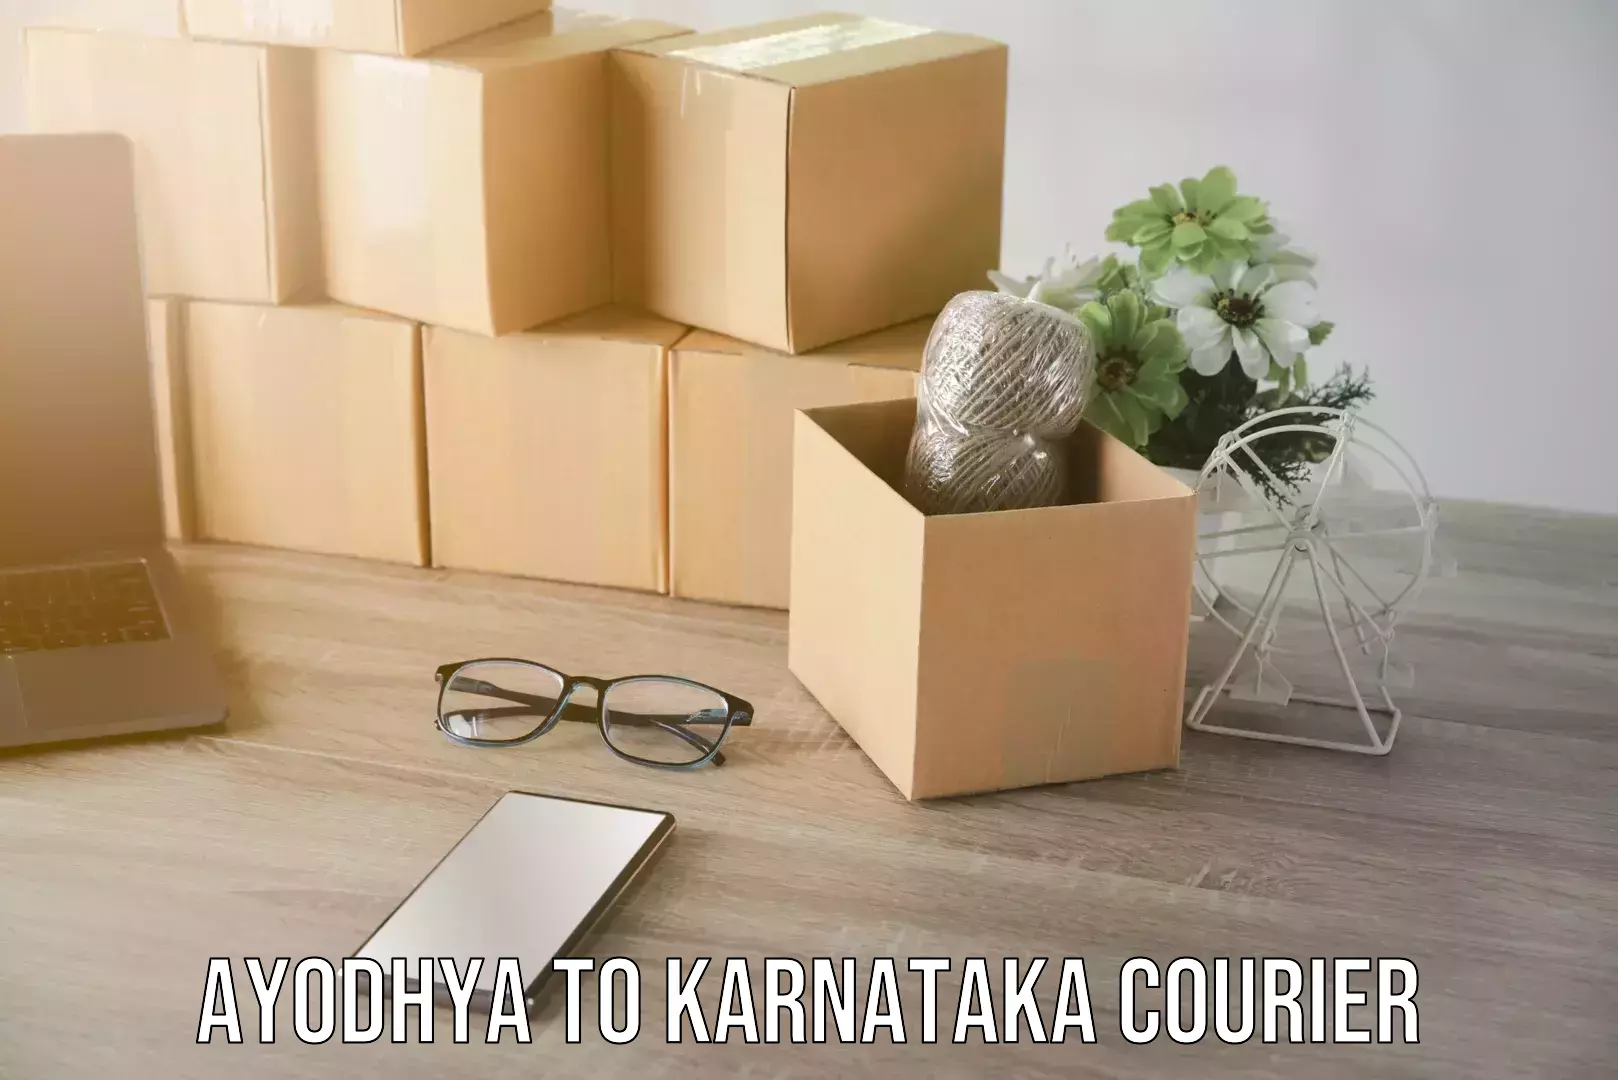 Modern parcel services Ayodhya to Karnataka